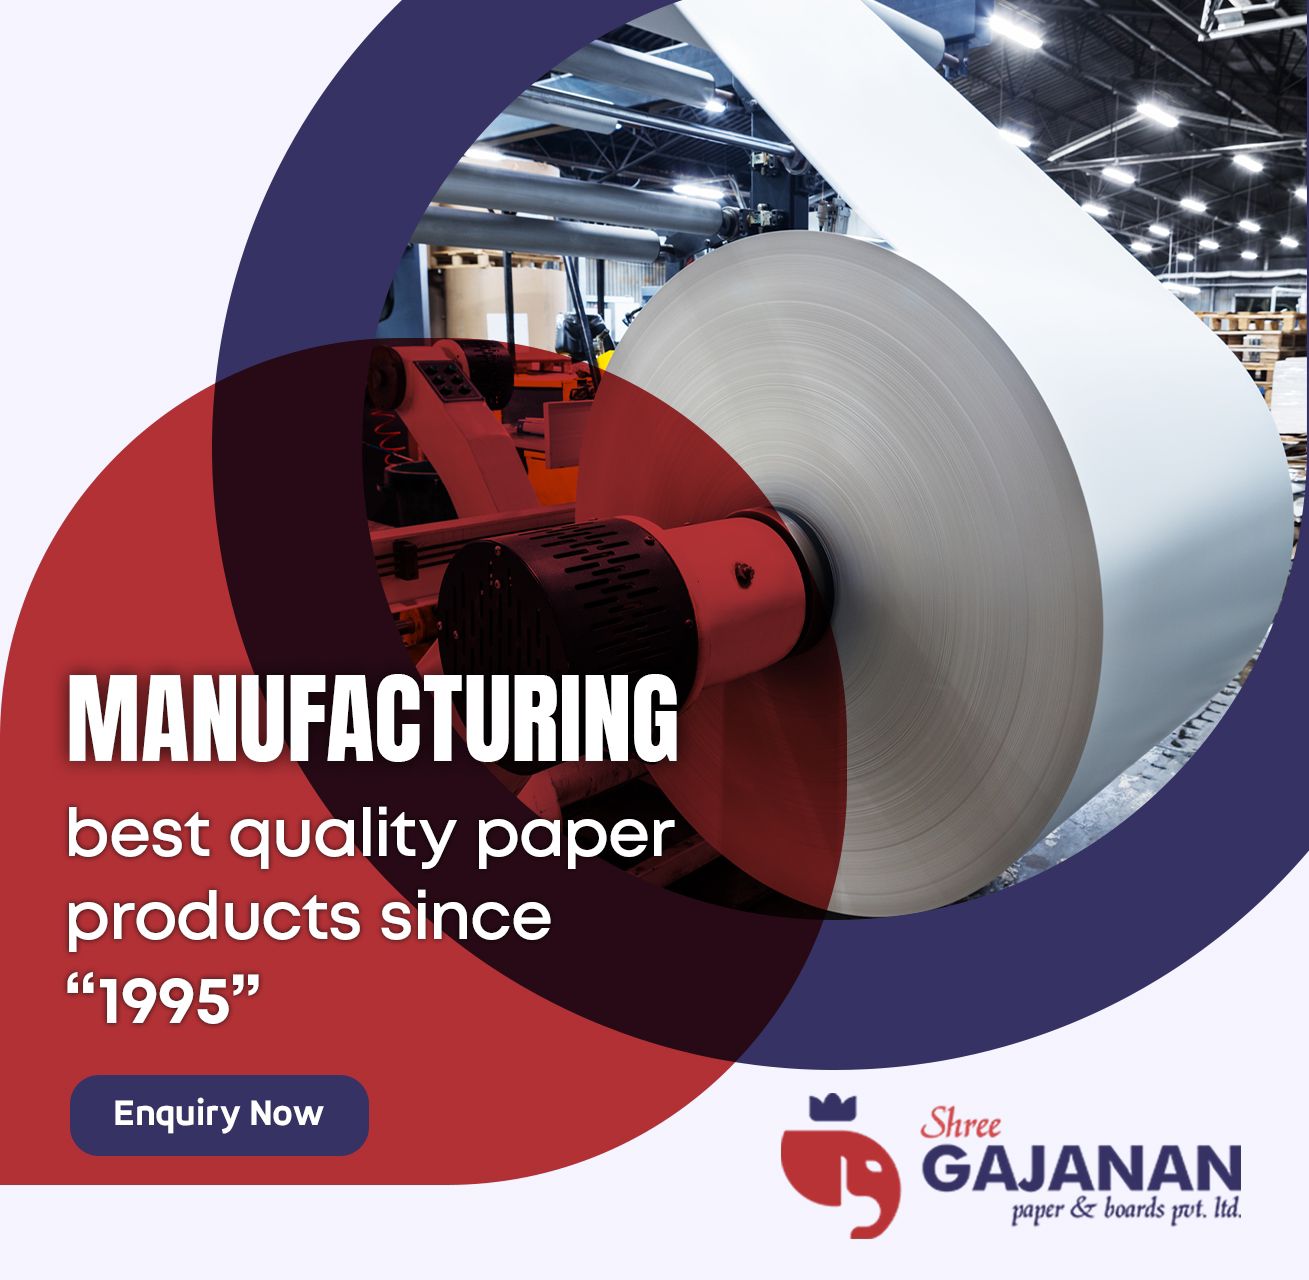 Shree Gajanan Paper & Boards Pvt. Ltd